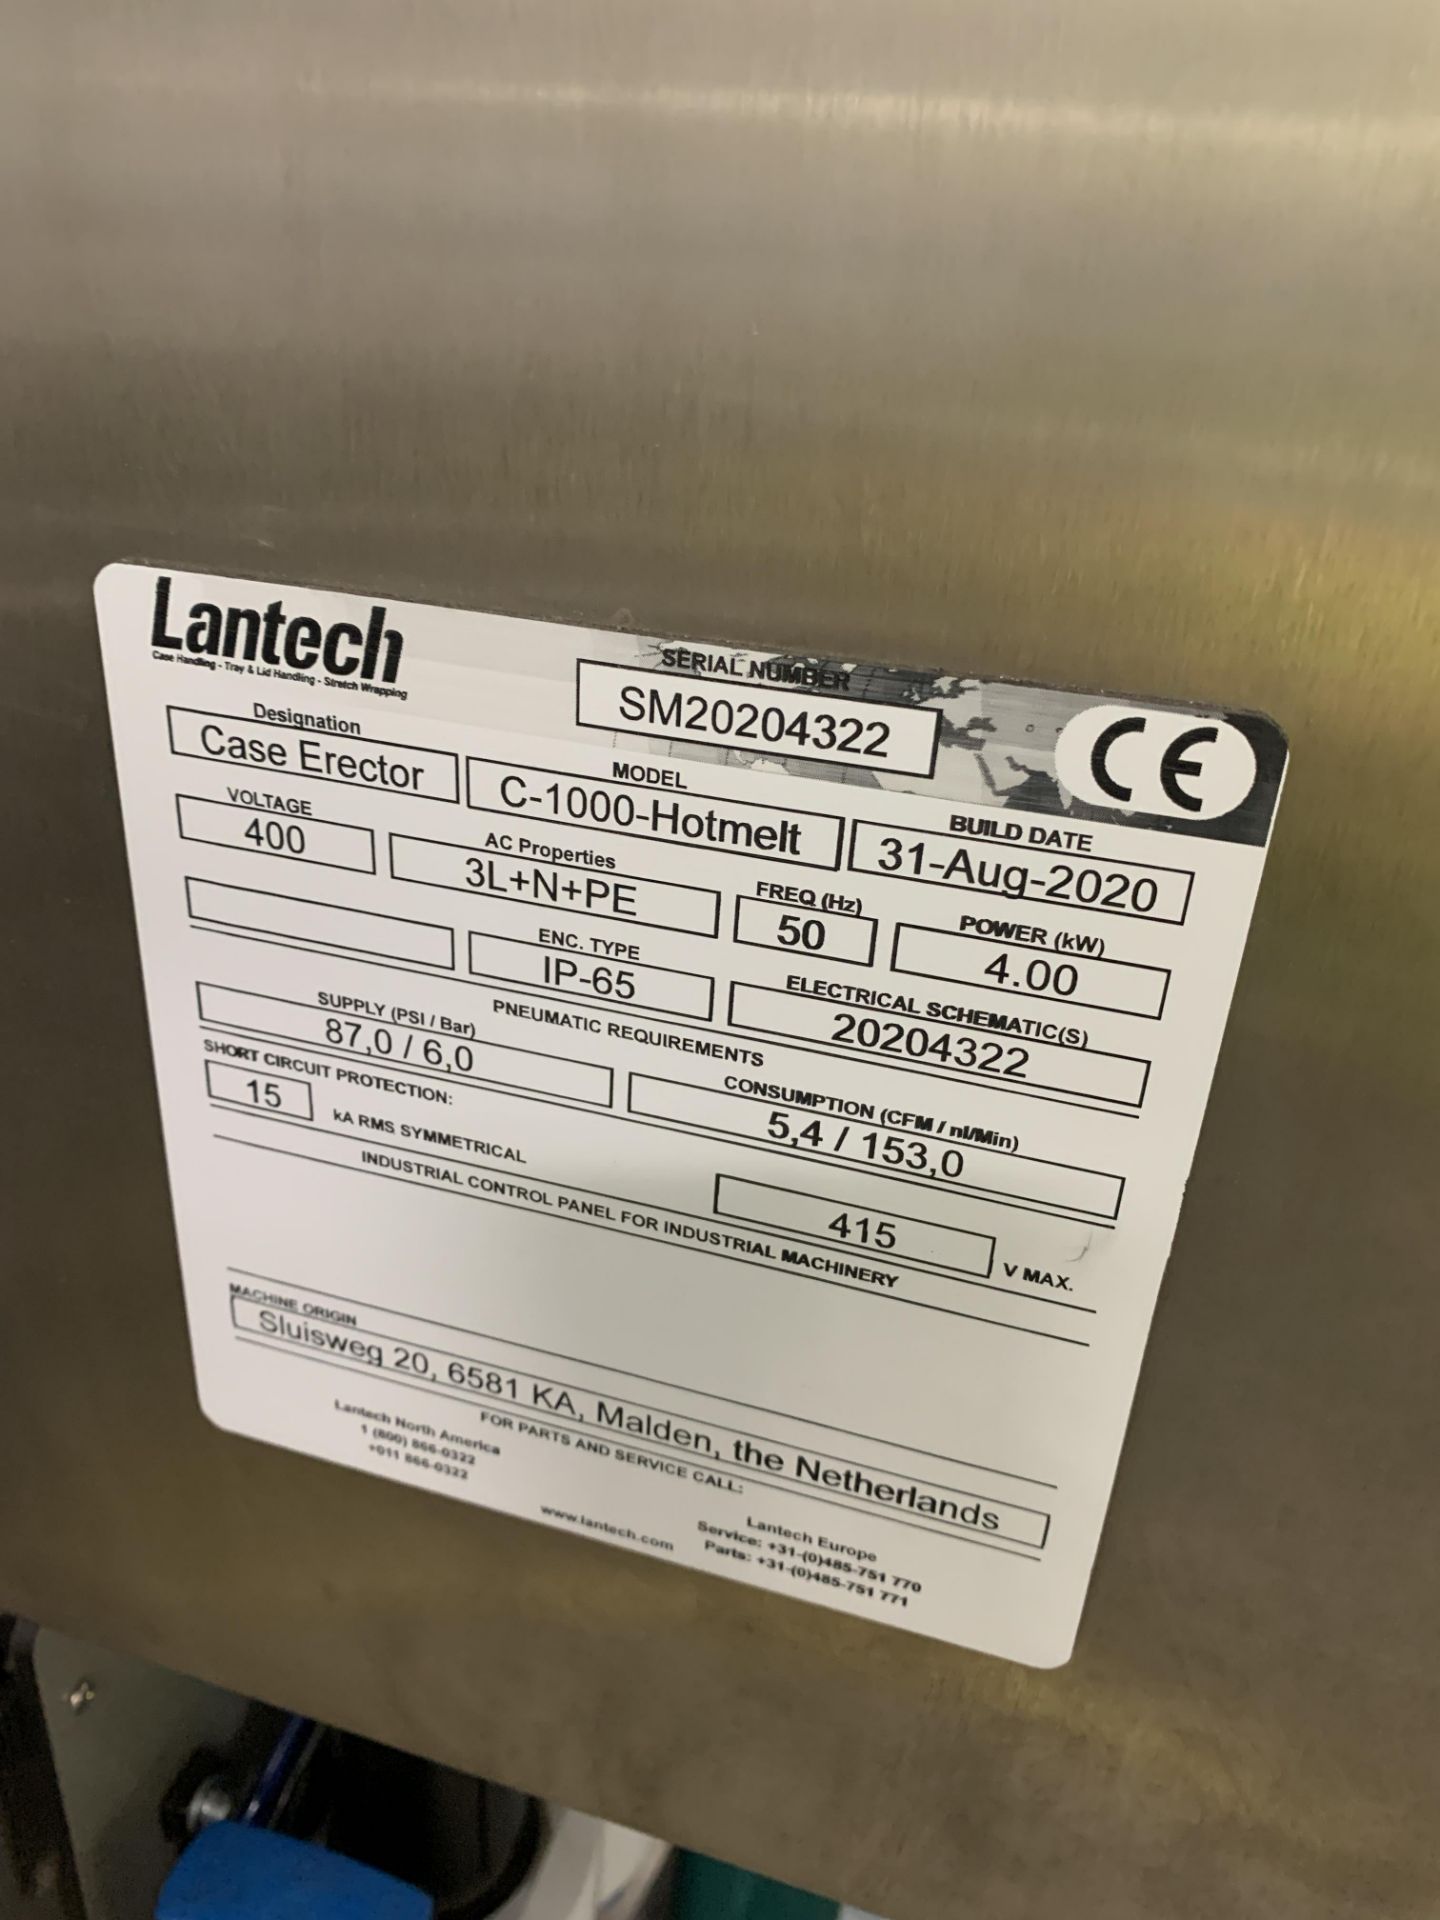 Lantech C-100-Hotmelt case erector (2020) - Image 3 of 4